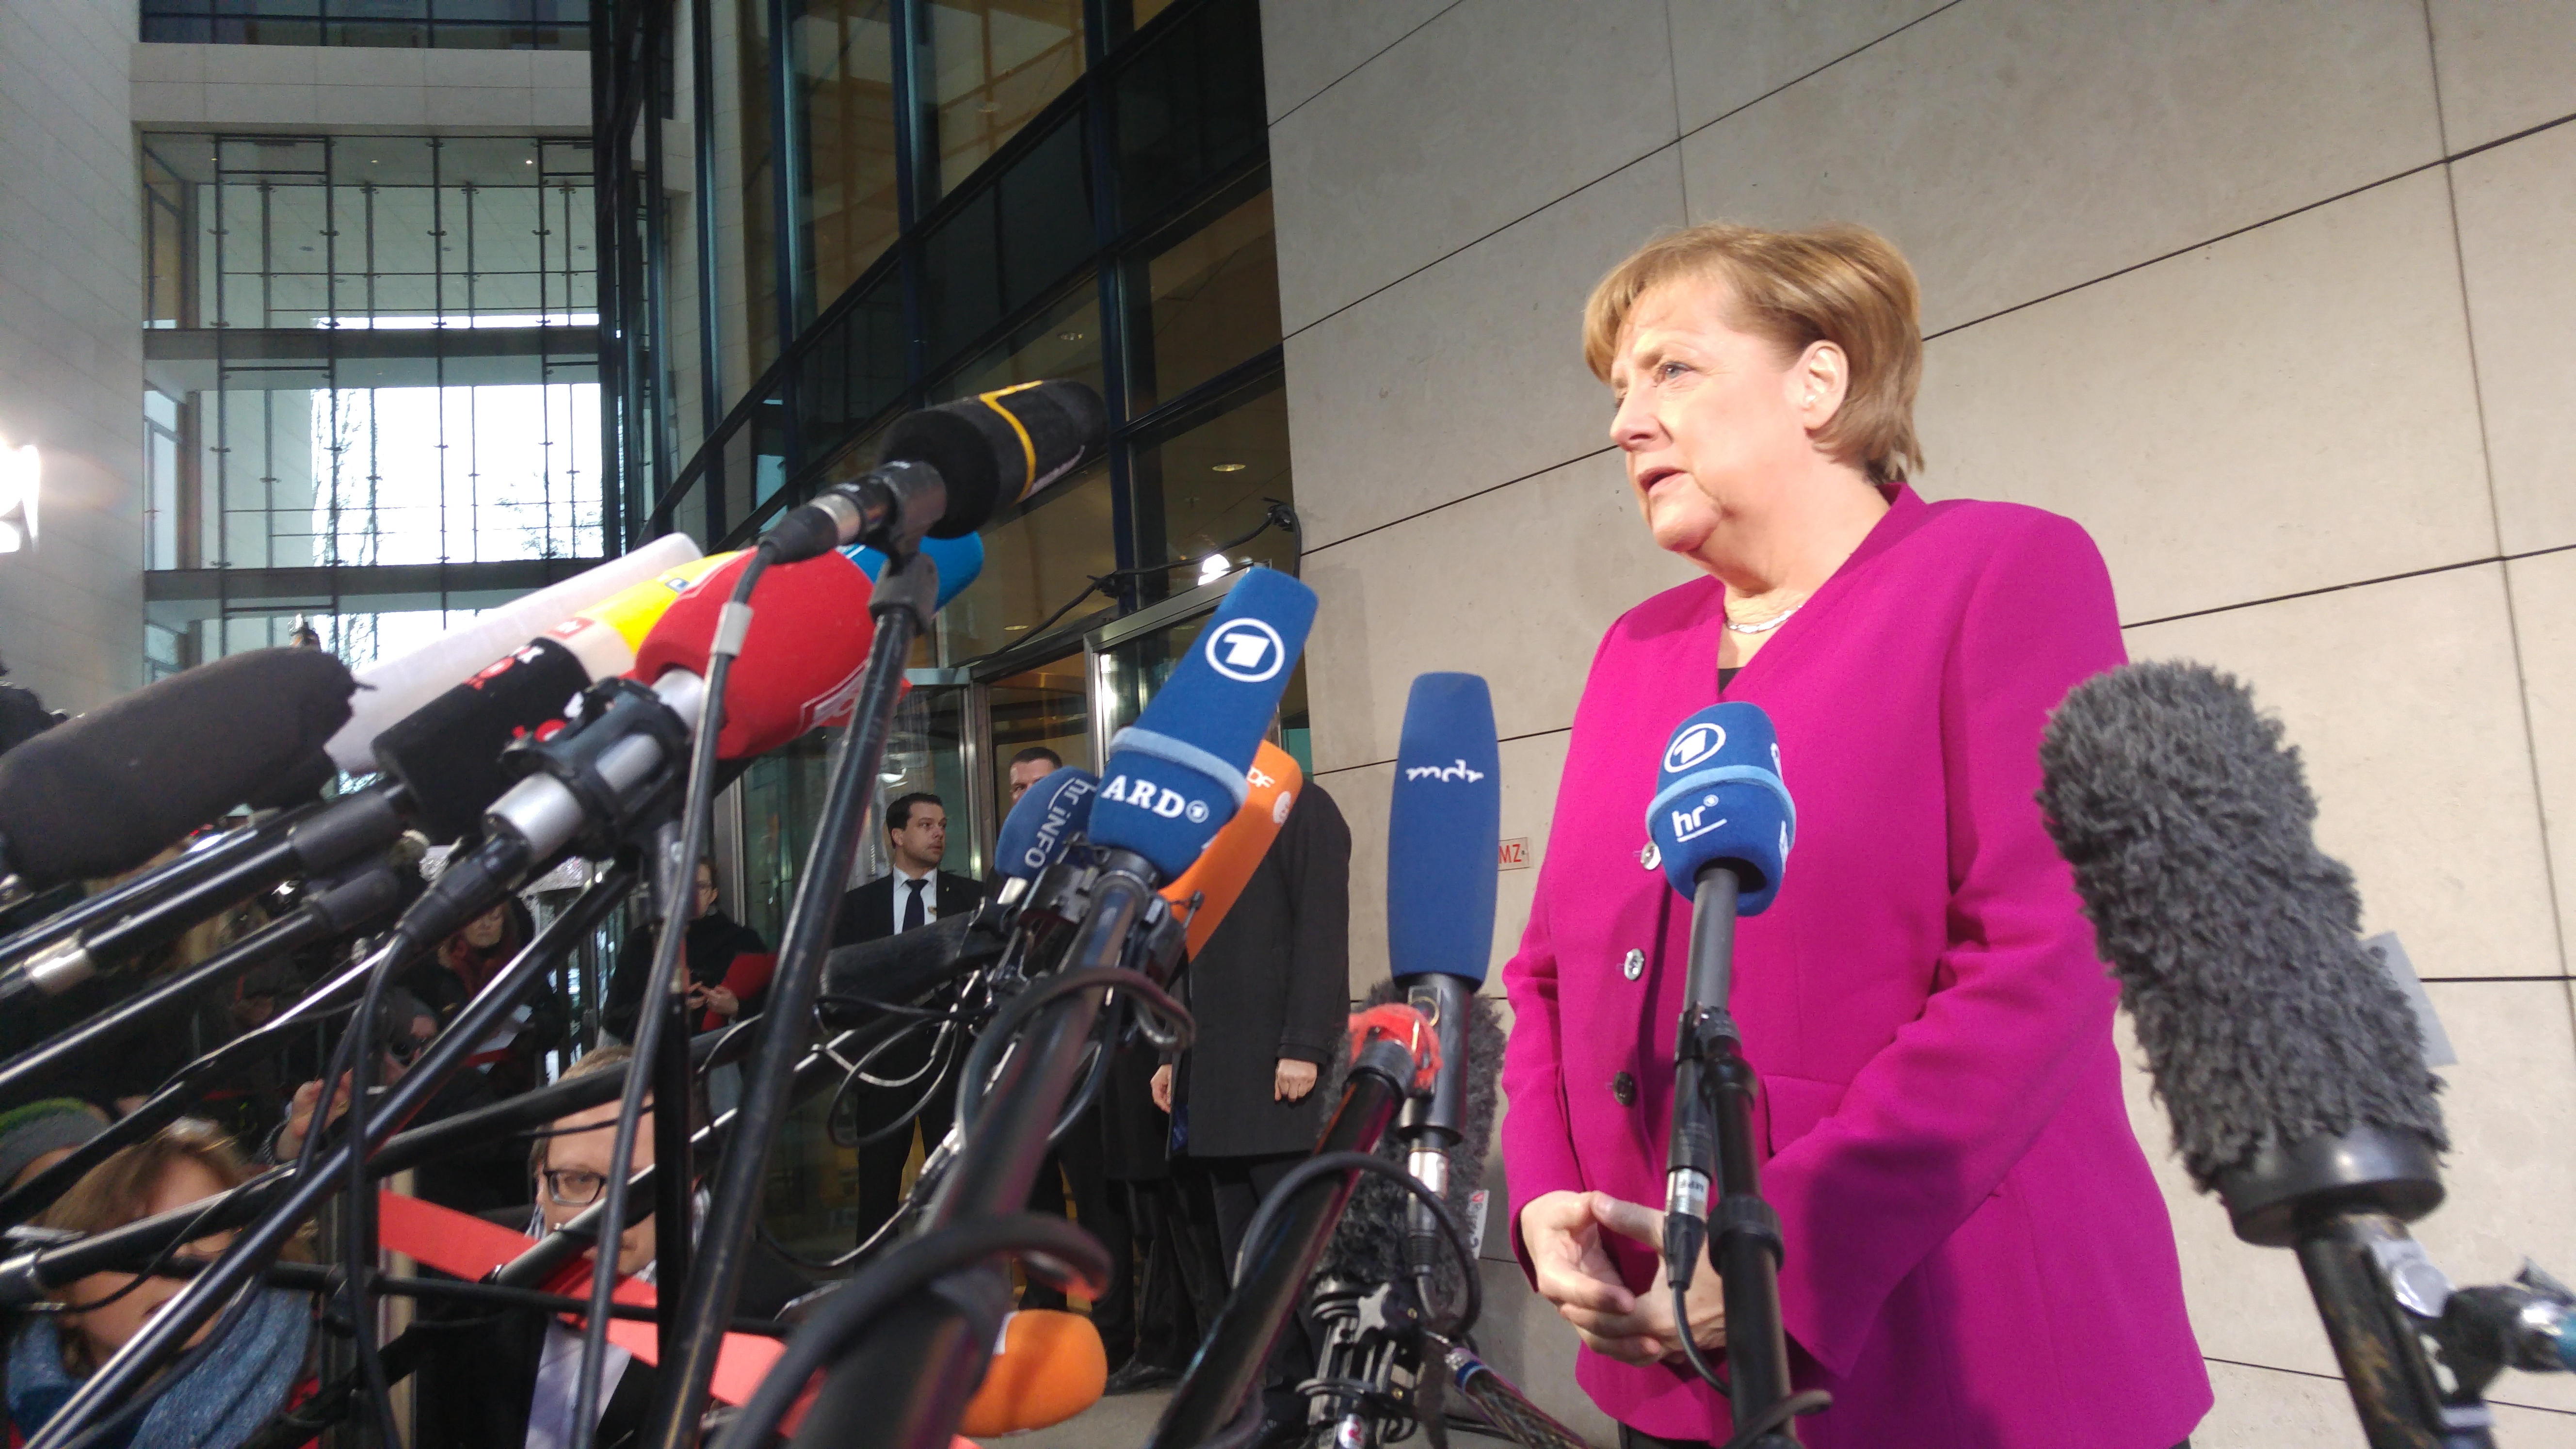 Sondierungen in Berlin - Angela Merkel gibt ein Statement